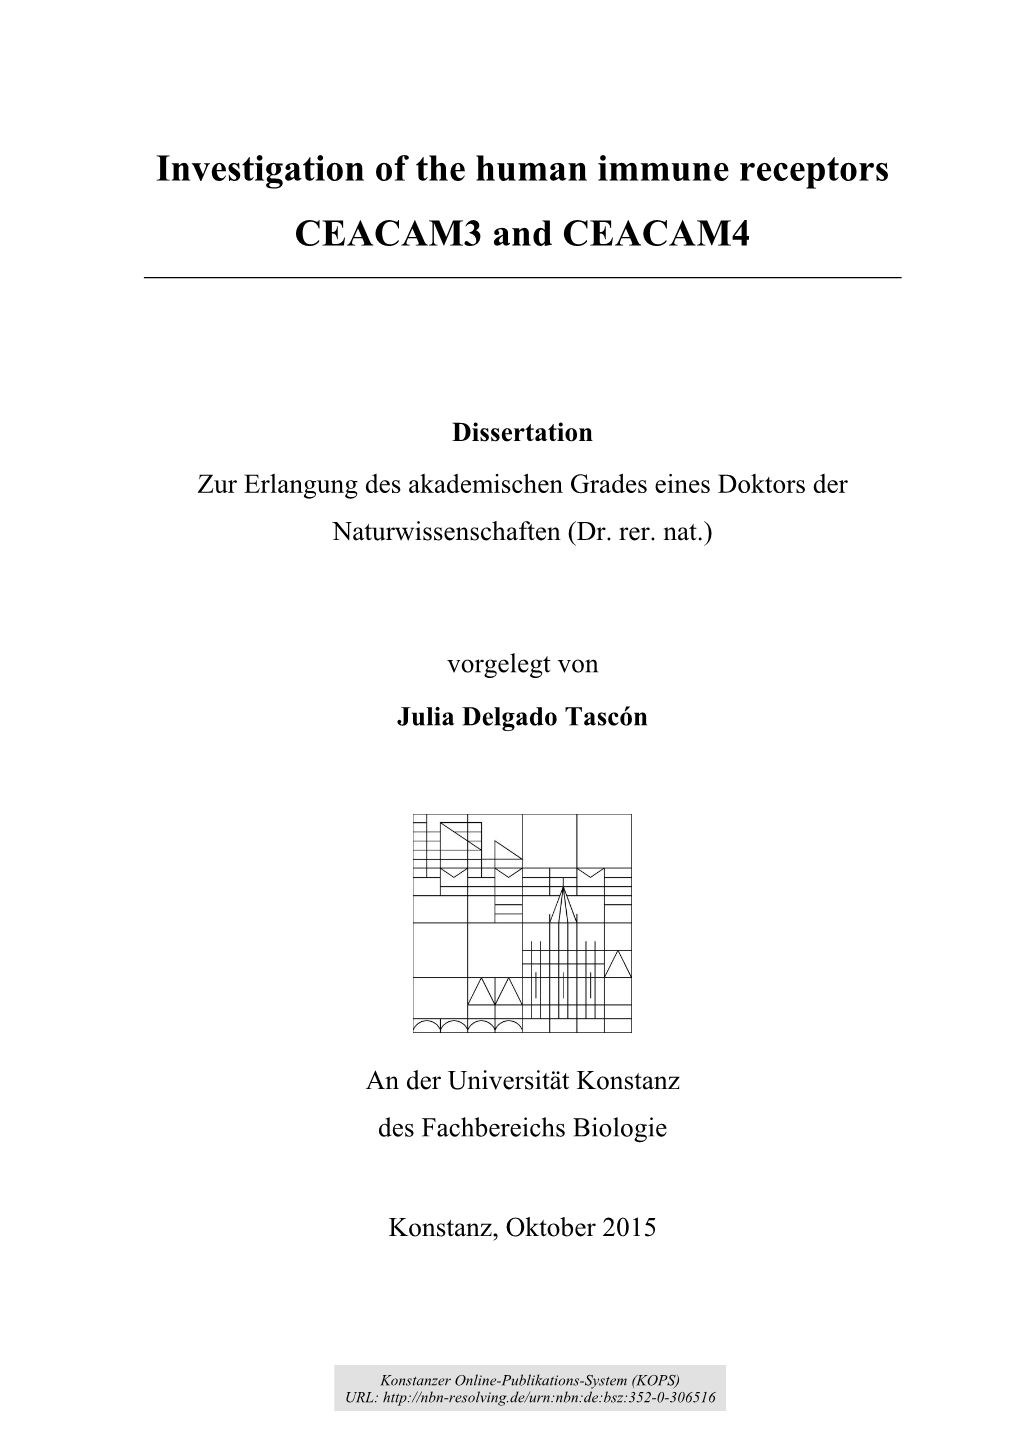 Investigation of the Immune Receptors CEACAM3 and CEACAM4